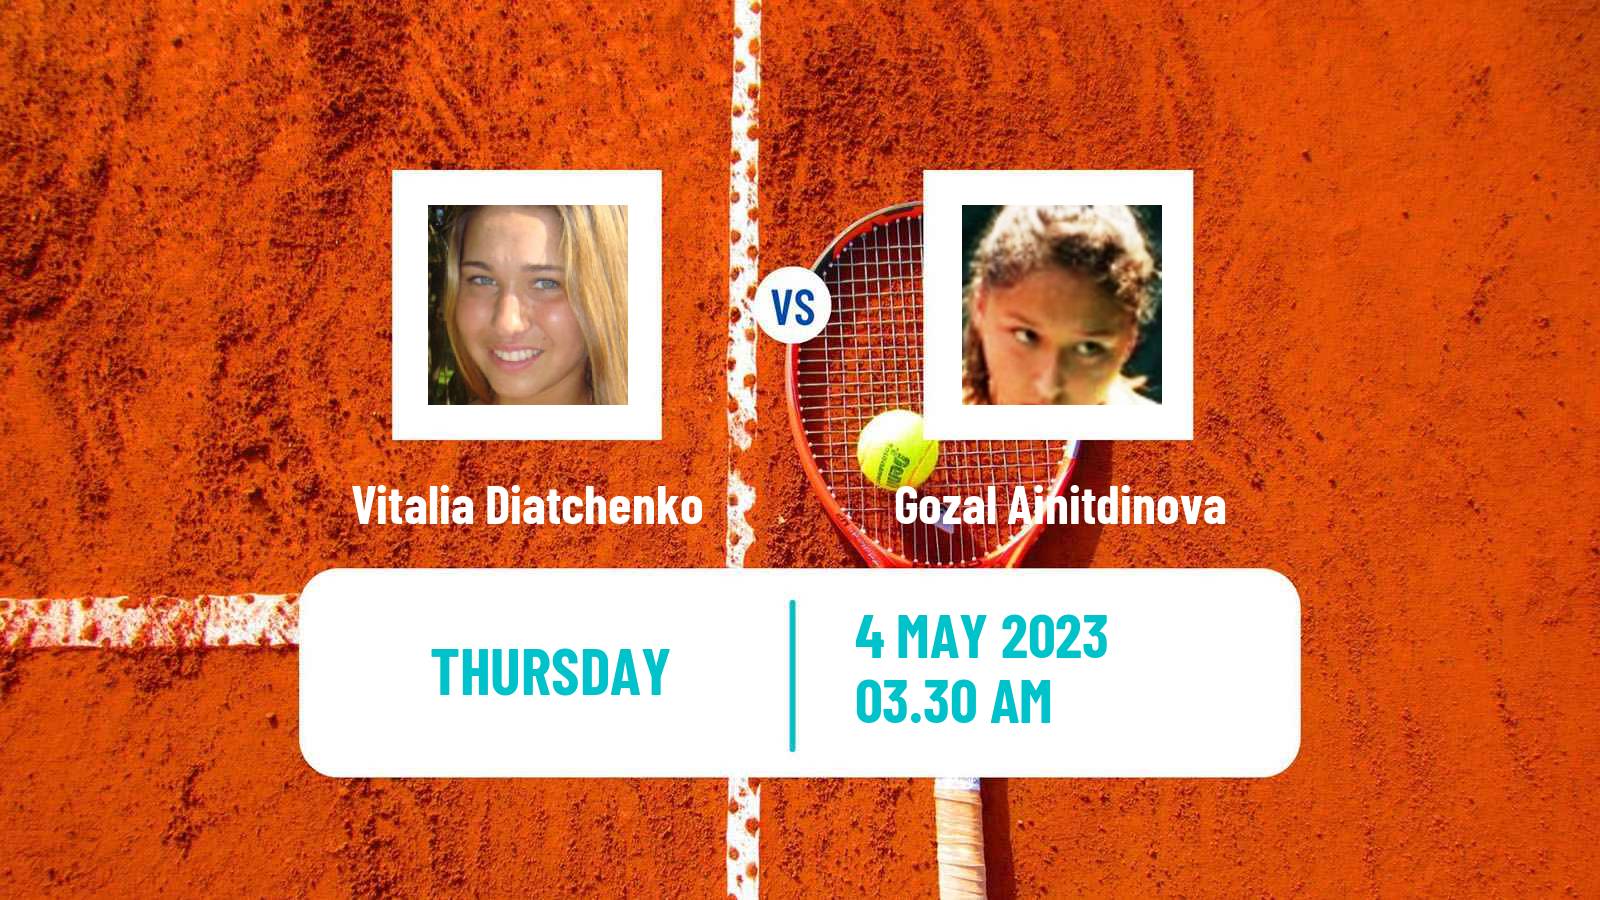 Tennis ITF Tournaments Vitalia Diatchenko - Gozal Ainitdinova